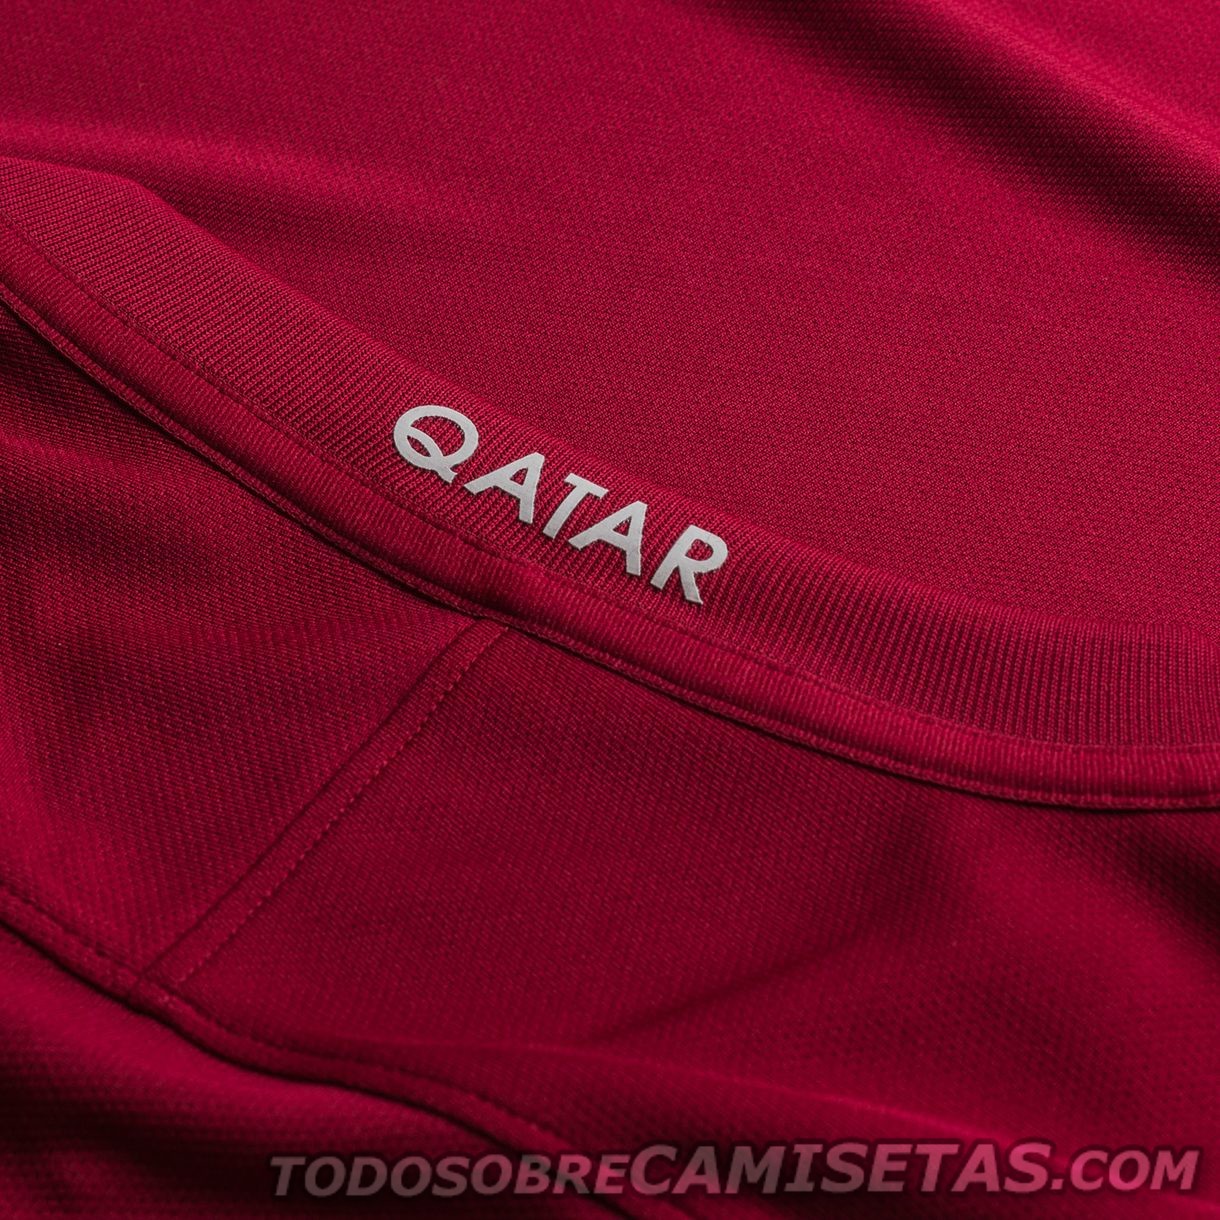 Qatar Nike 2017 Home Kit